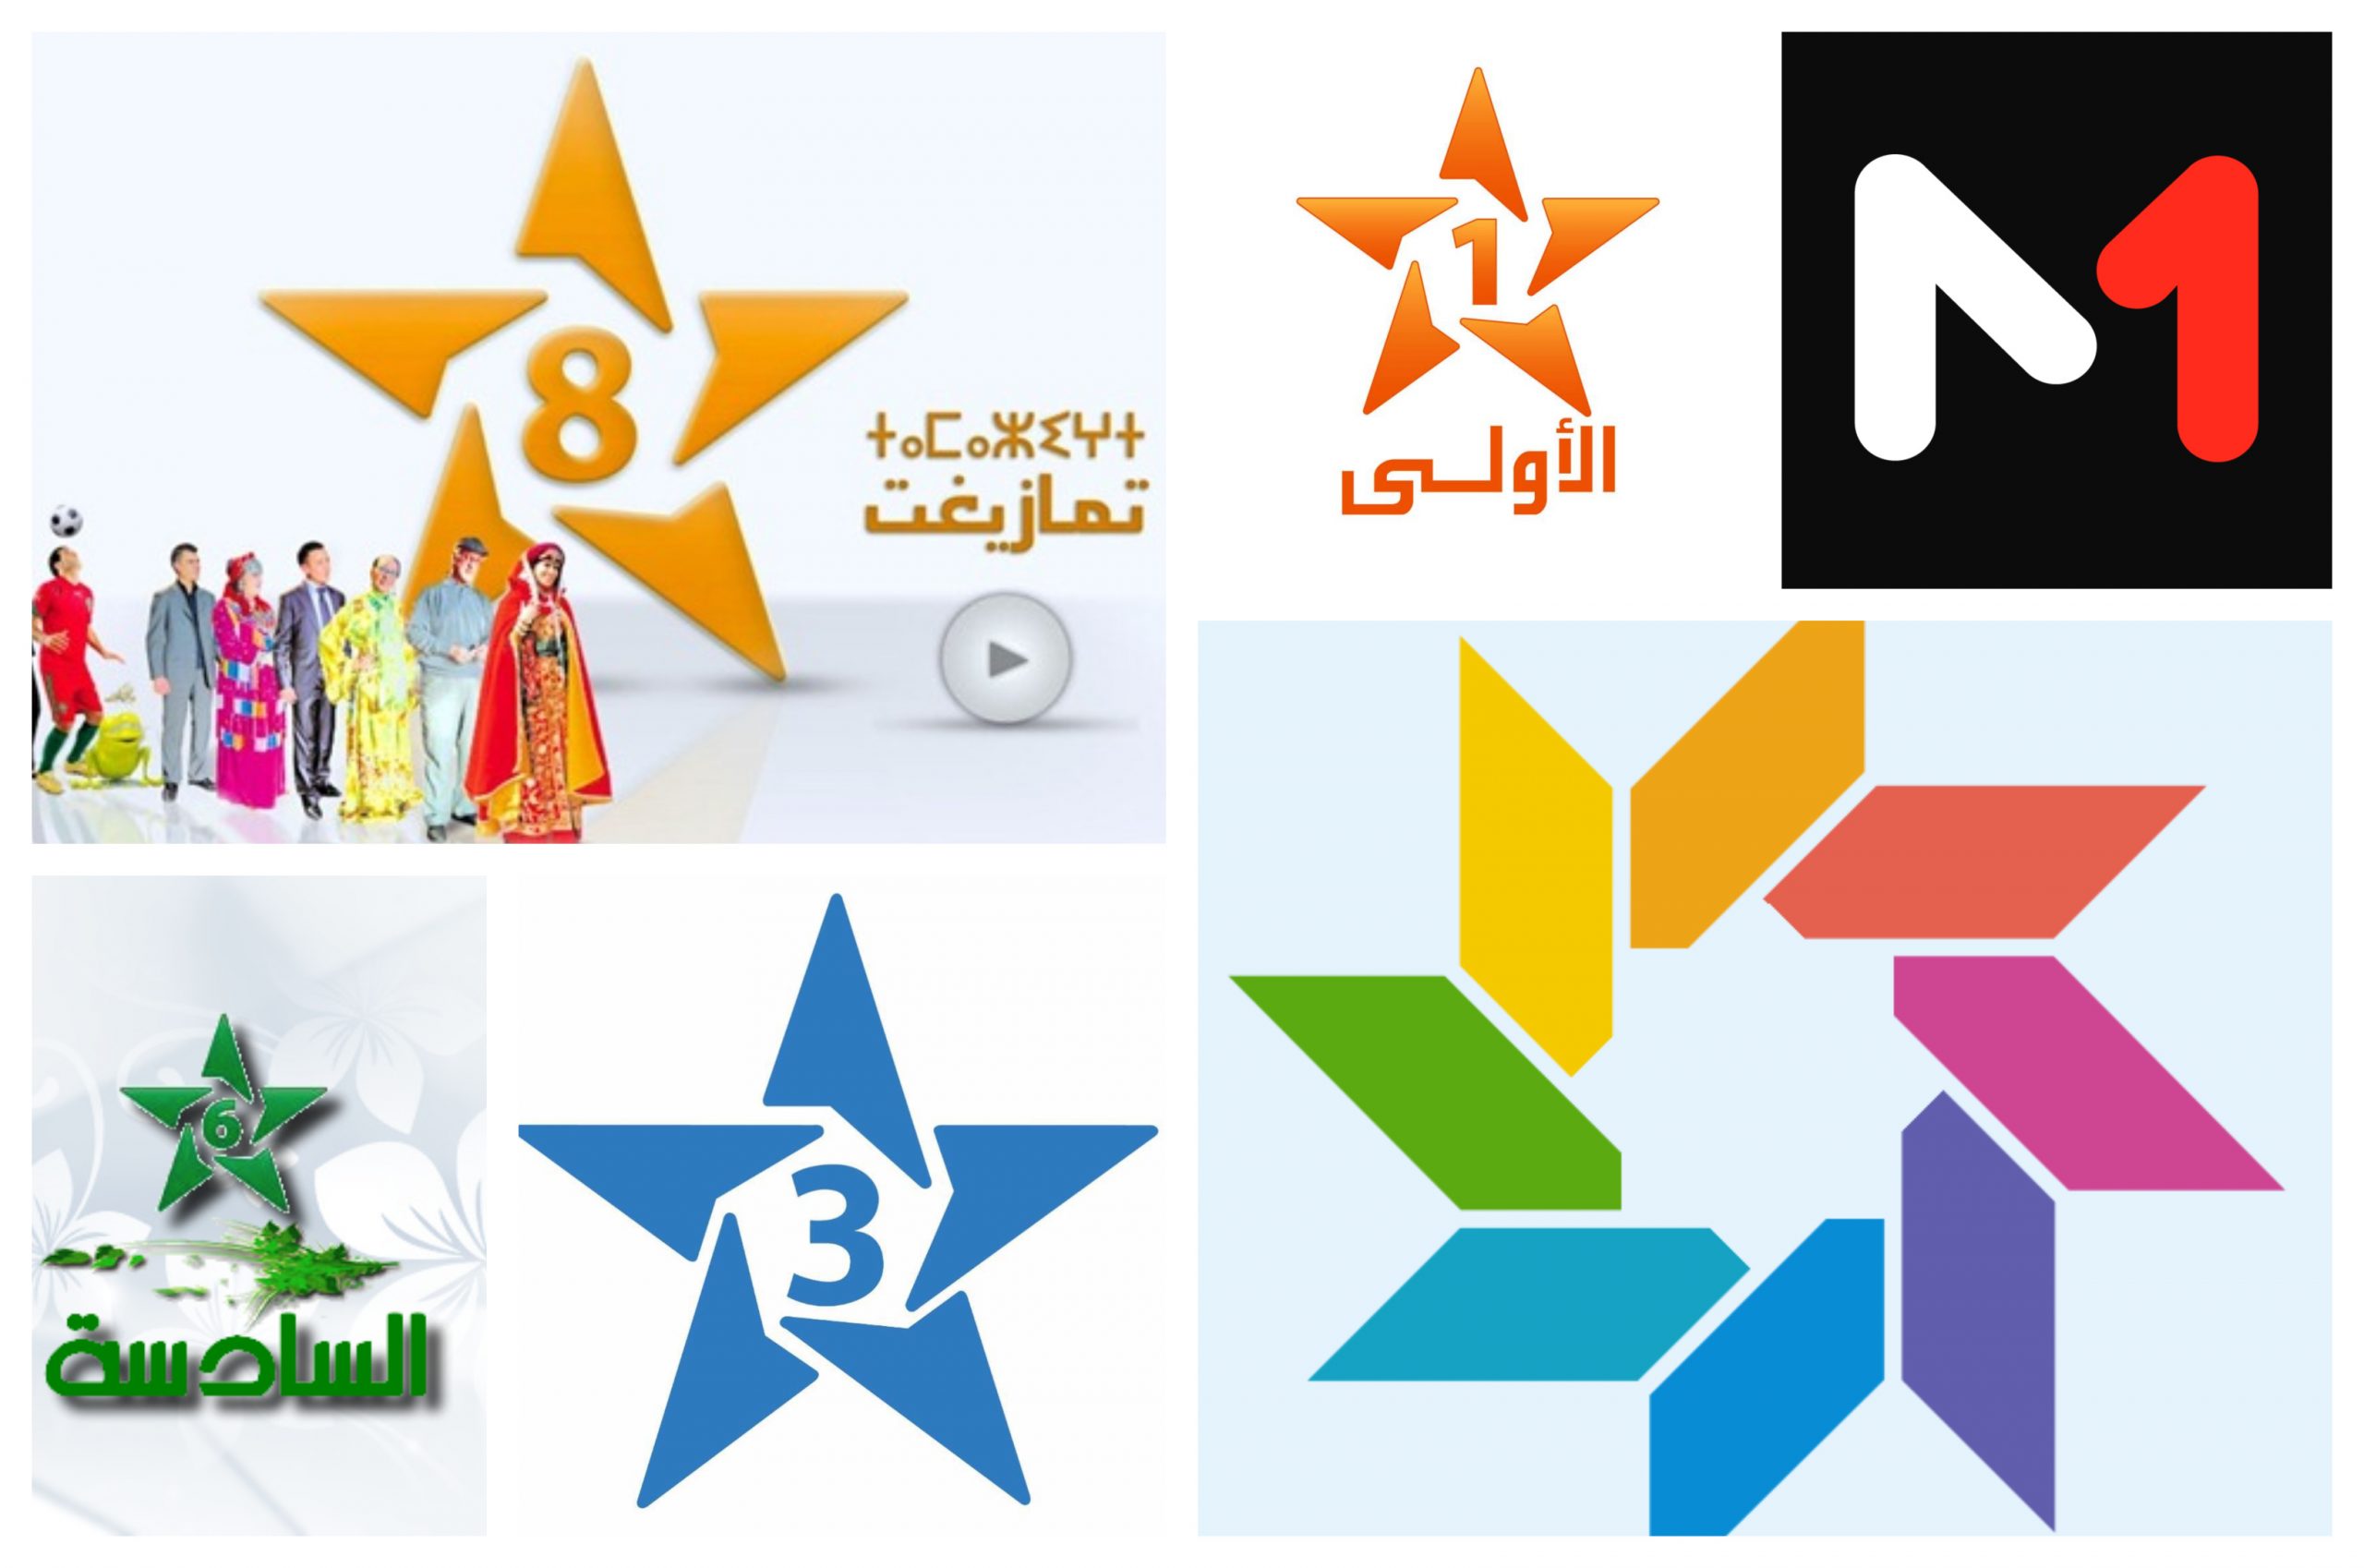 المسلسلات المغربية والتركية تتصدر مشاهدات التلفون العمومي